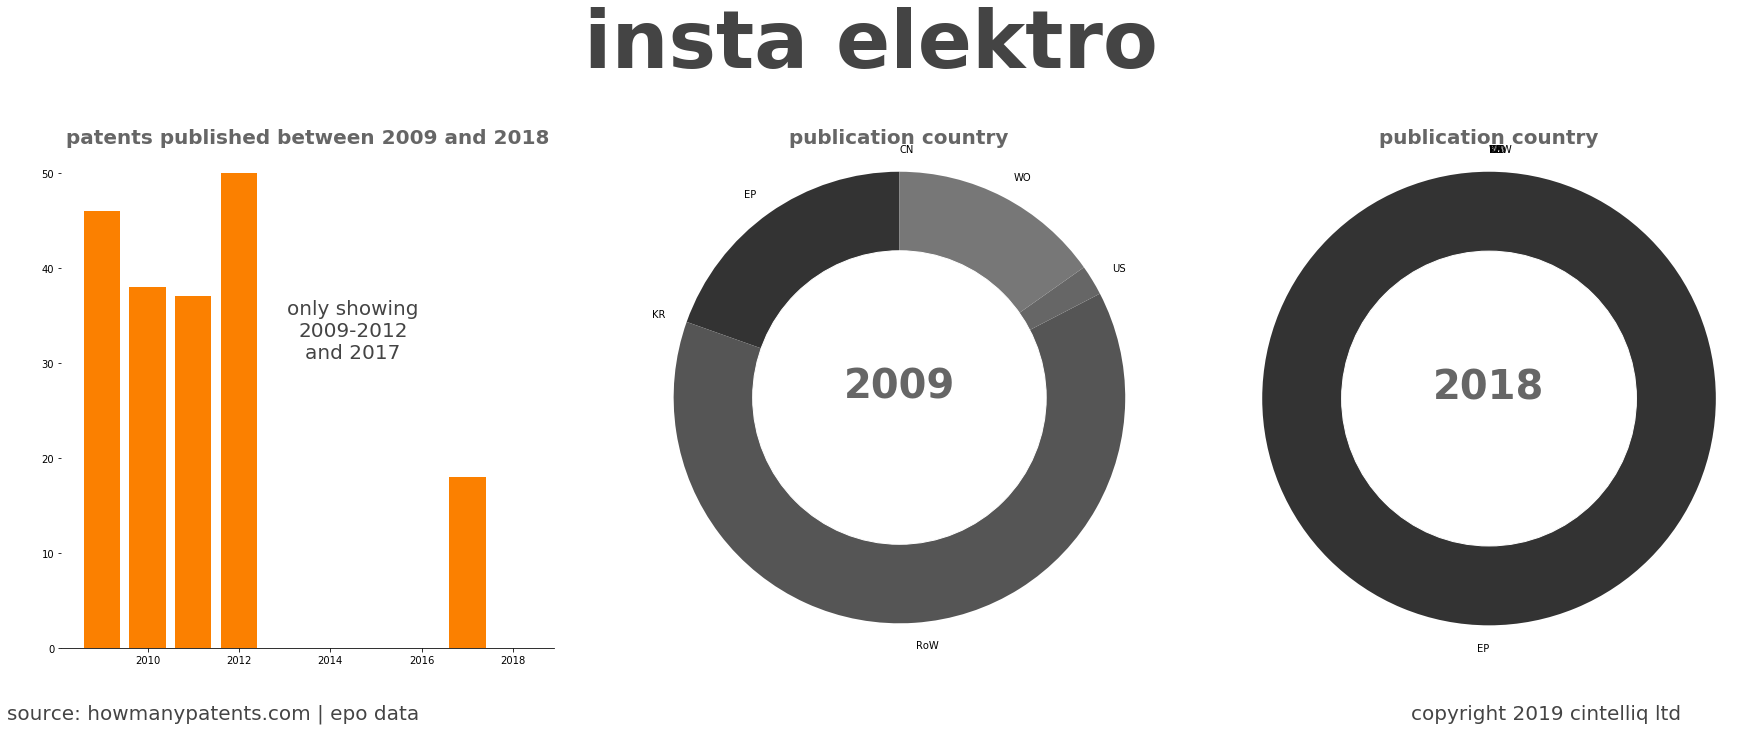 summary of patents for Insta Elektro